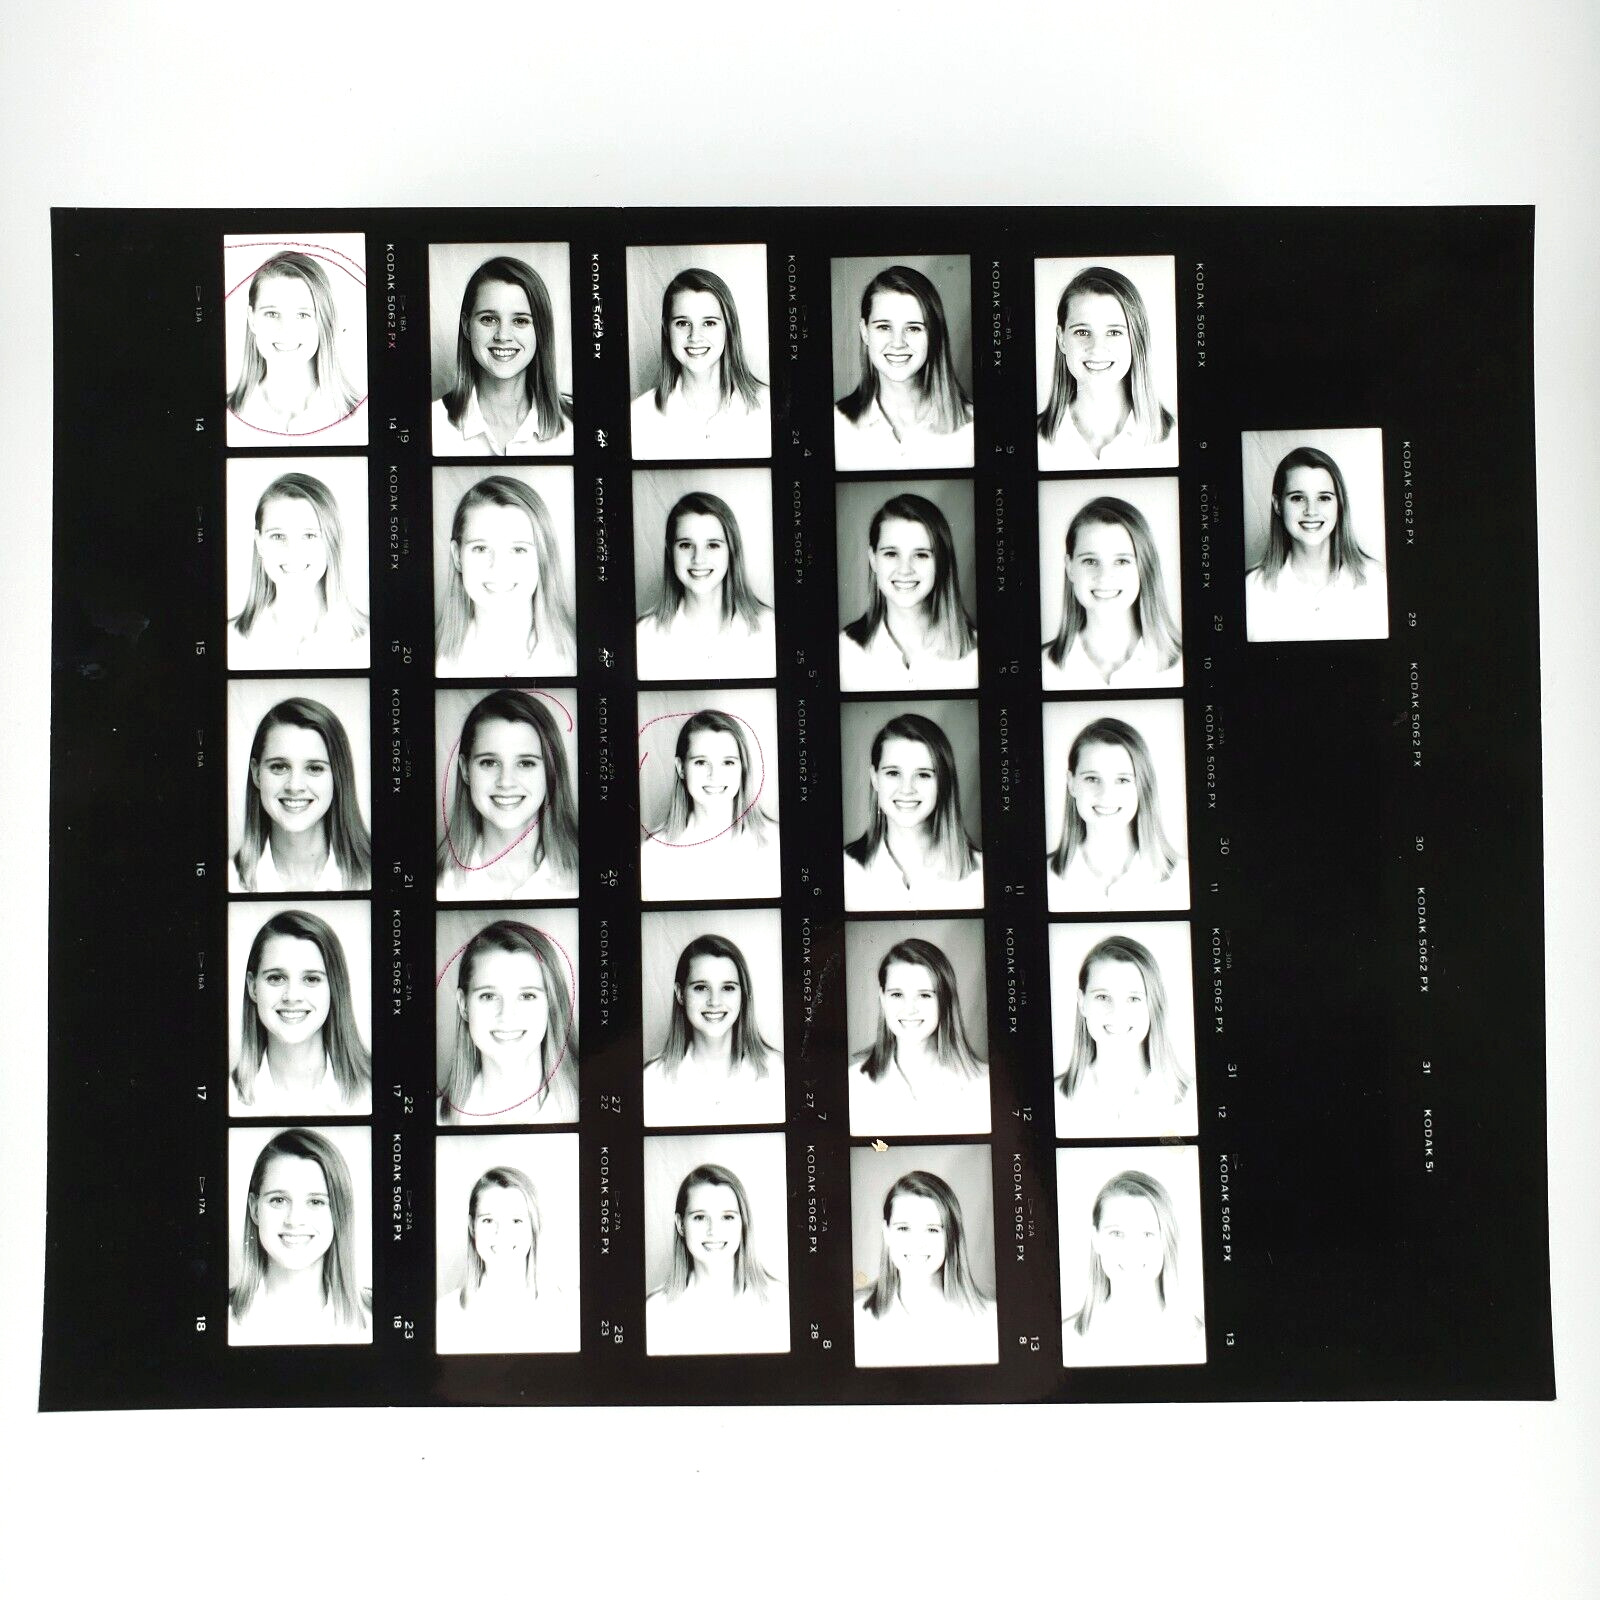 Smiling Young Woman Headshot Photo 1990s Girl Studio Portrait Contact Sheet A551